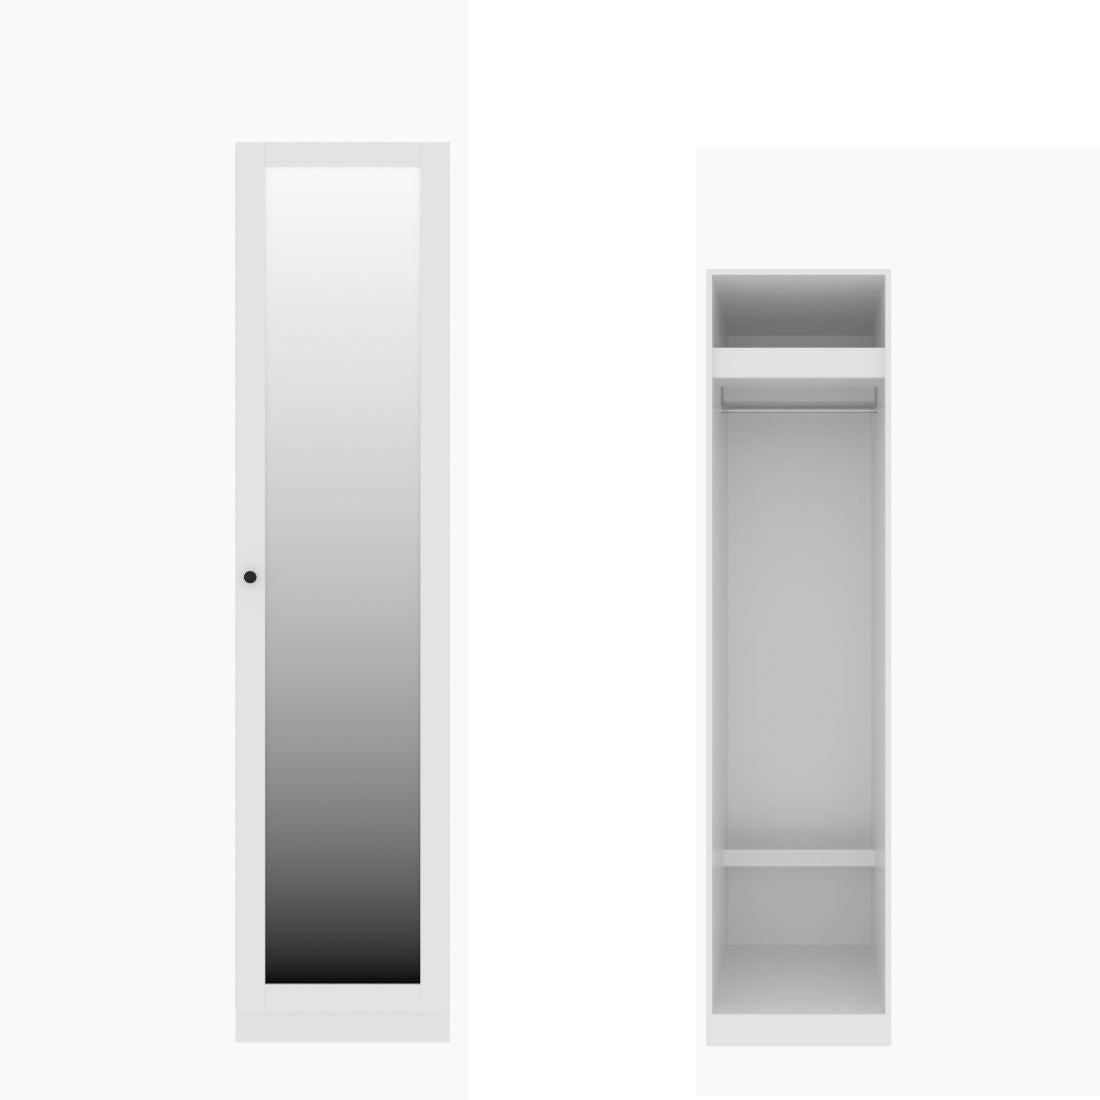 ตู้เสื้อผ้า ราวแขวนโล่ง OP-J (หน้าบานเปิดขวา) ขนาด 50 ซม. รุ่น Blox สีขาว&กระจกเงา01